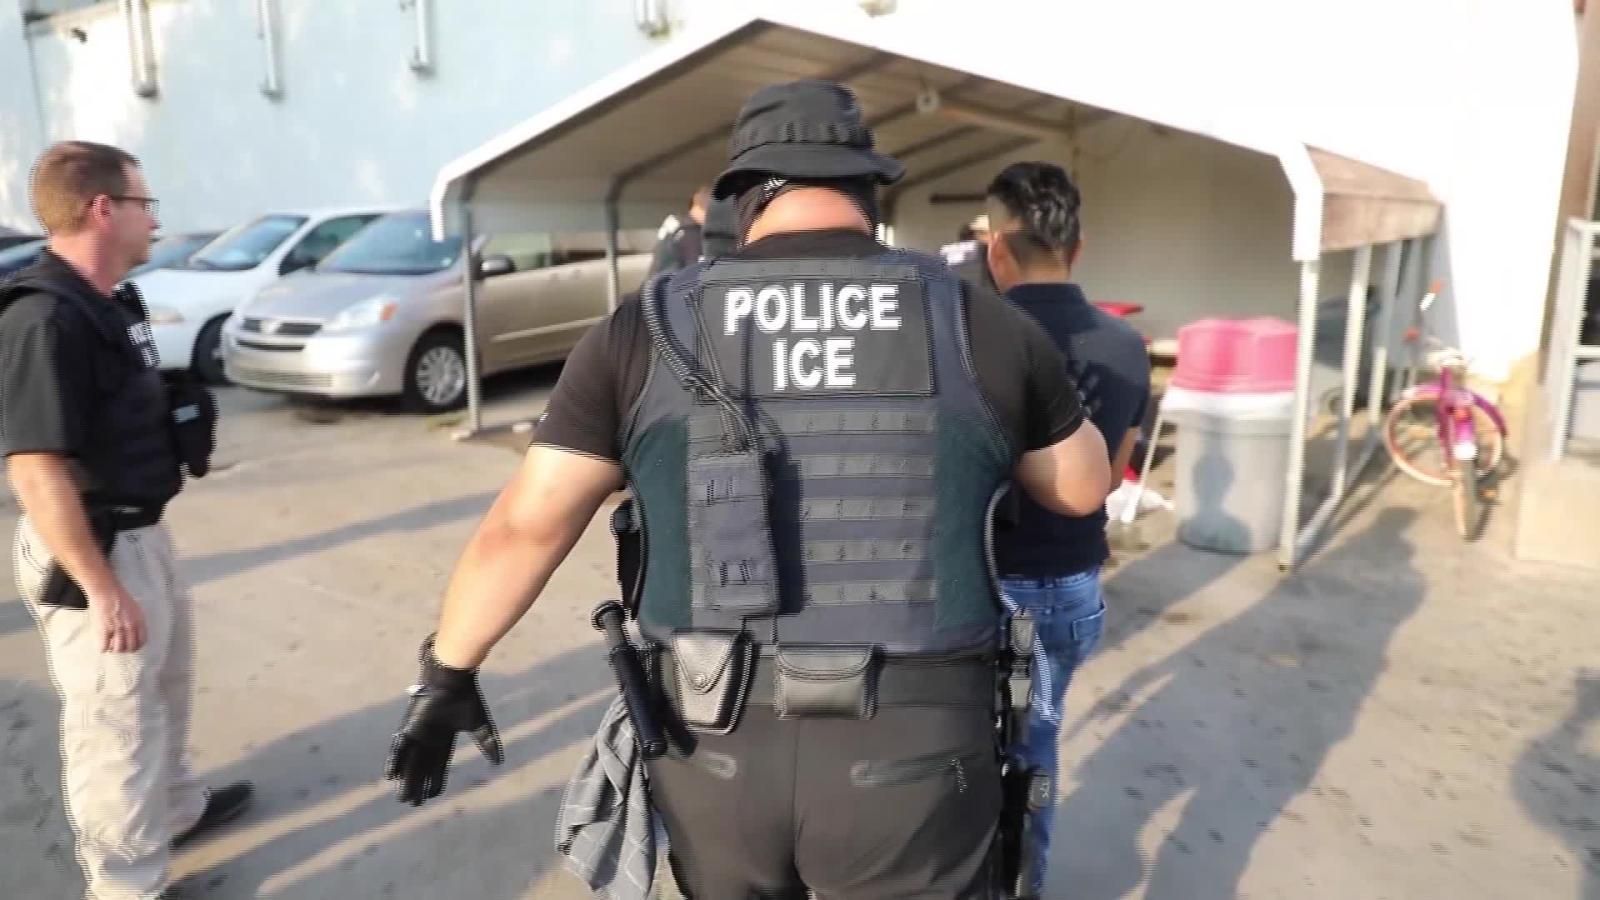 Vídeo muestra a agente del ICE poner su bota en el cuello de un inmigrante